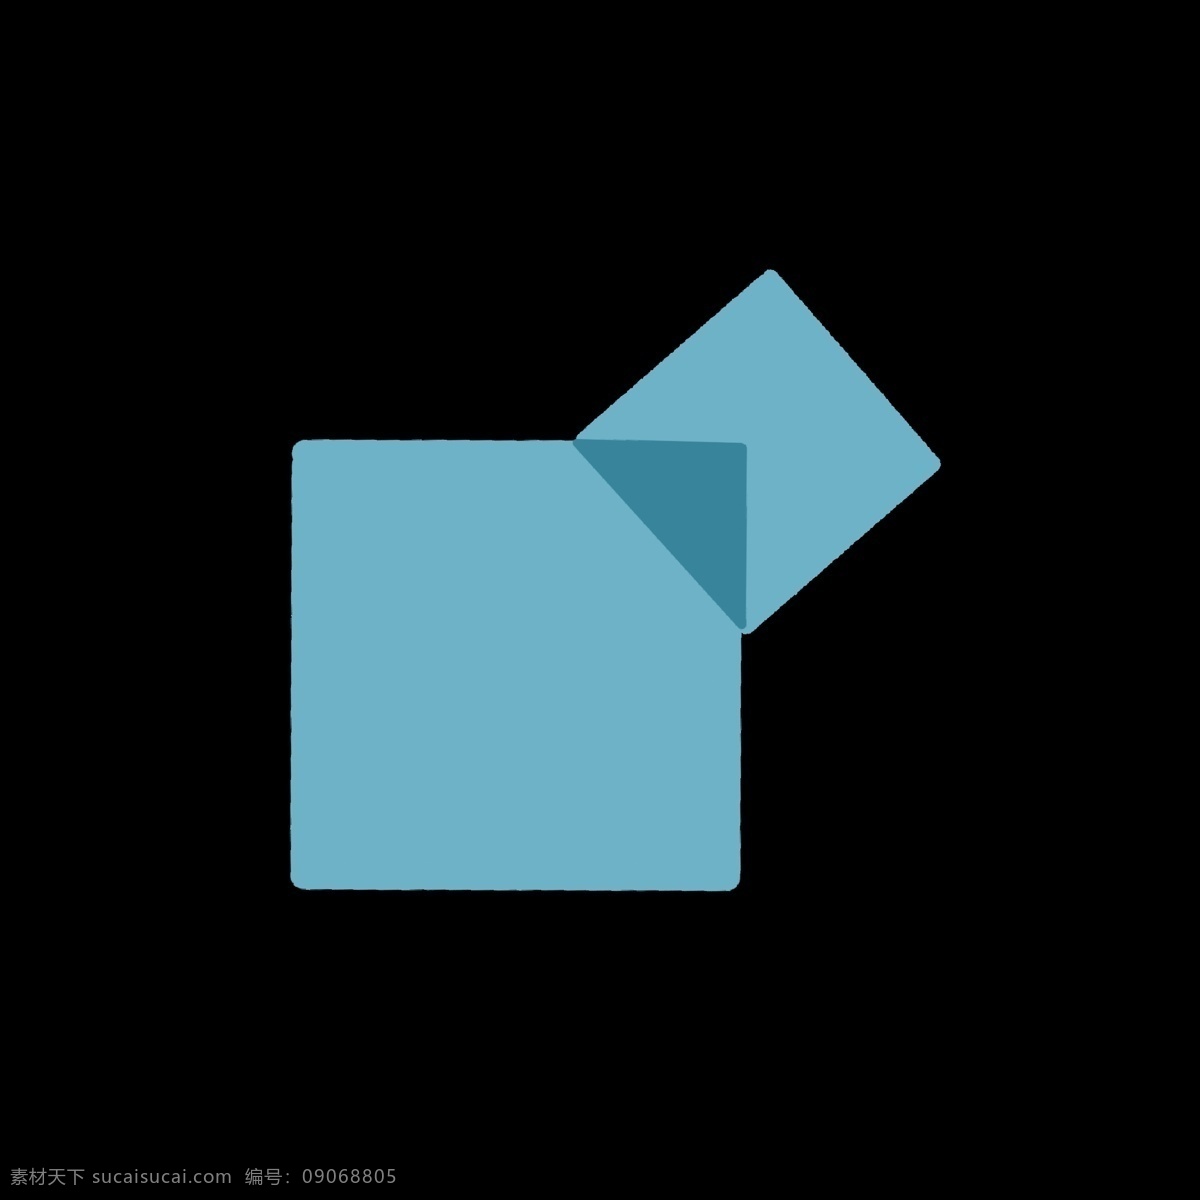 蓝色 方块 立体 按钮 图标 重叠 图案 几何形体 形状 卡通 简洁 简单 简约 ppt可用 网络 视频图标